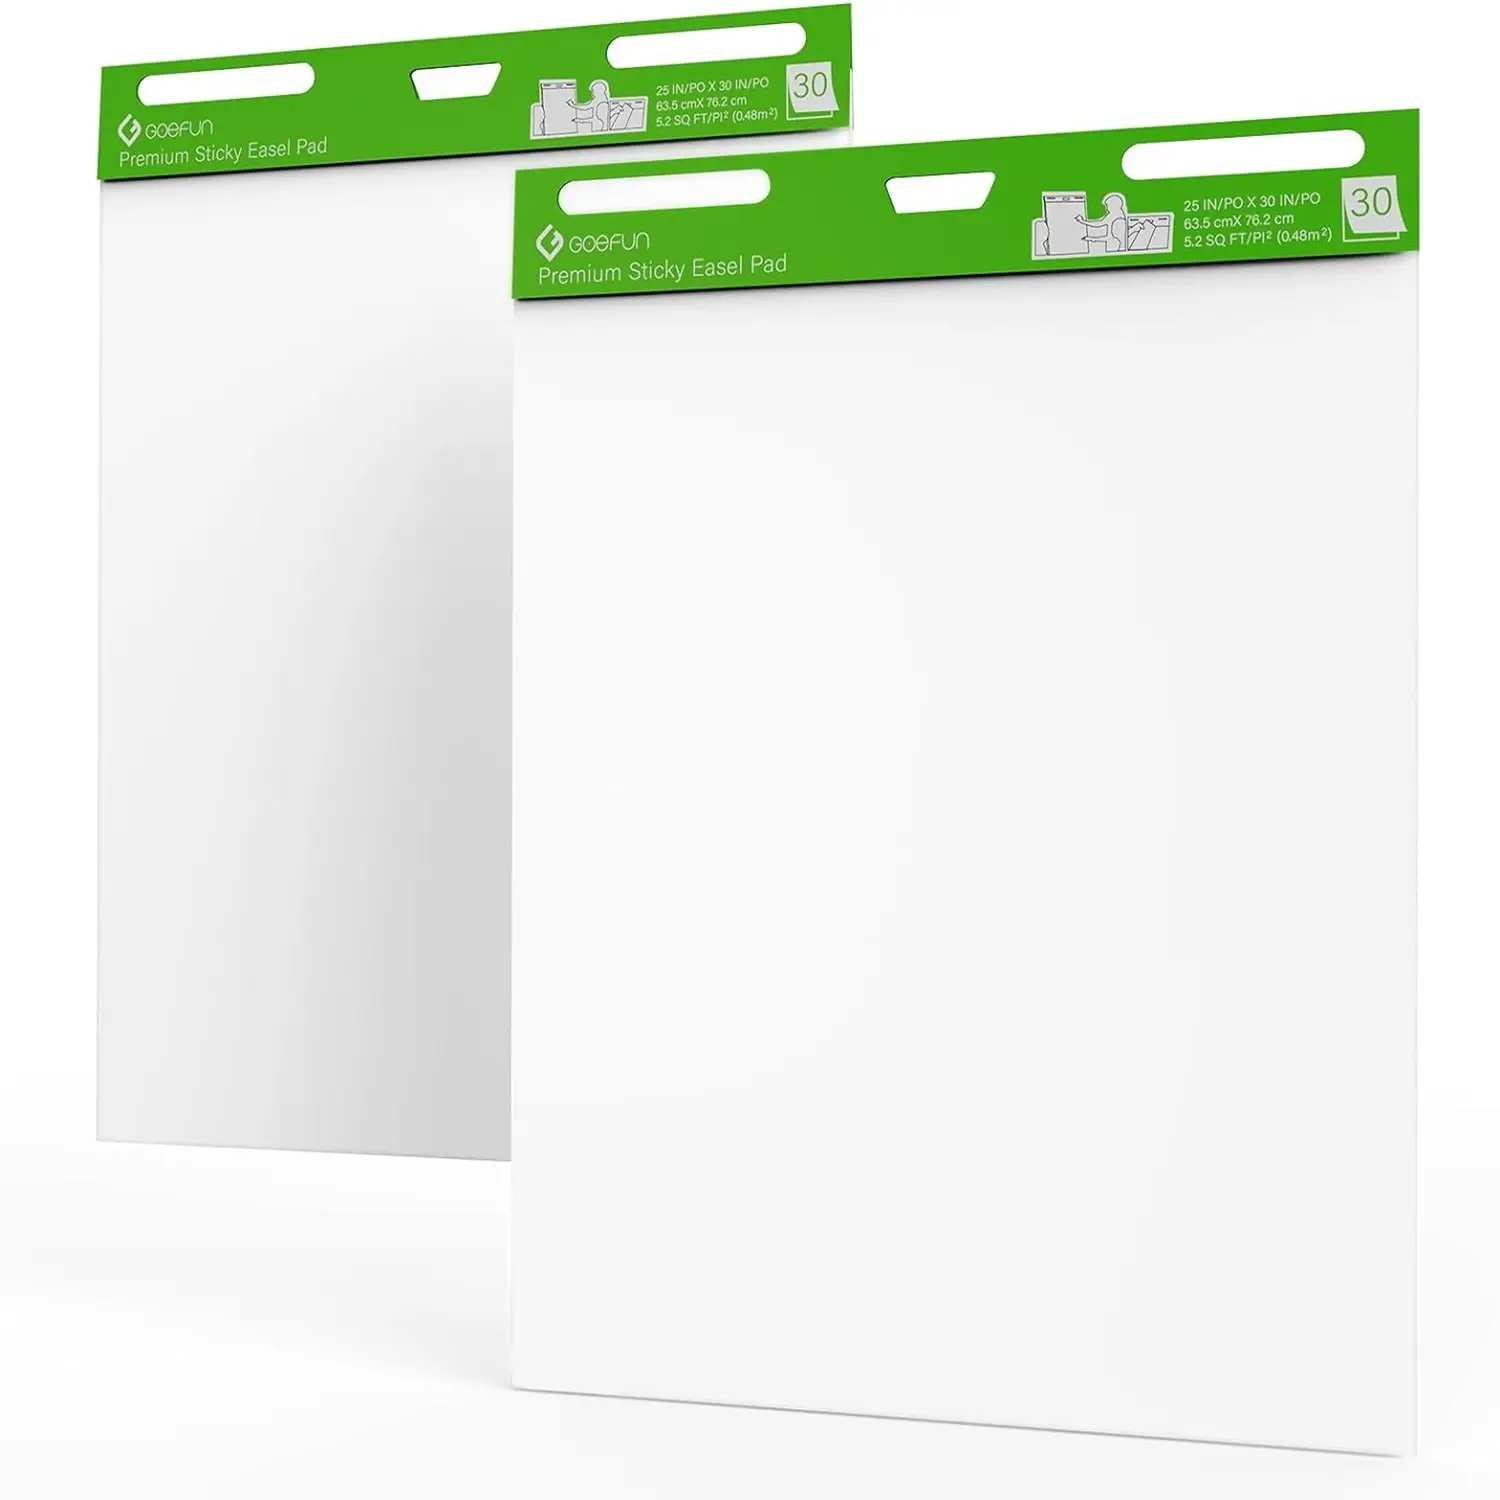 Le grandi note adesive bianche con carta per lavagna da conferenza artistica a strappo possono essere ripetutamente apposte a 30 pagine di preavviso